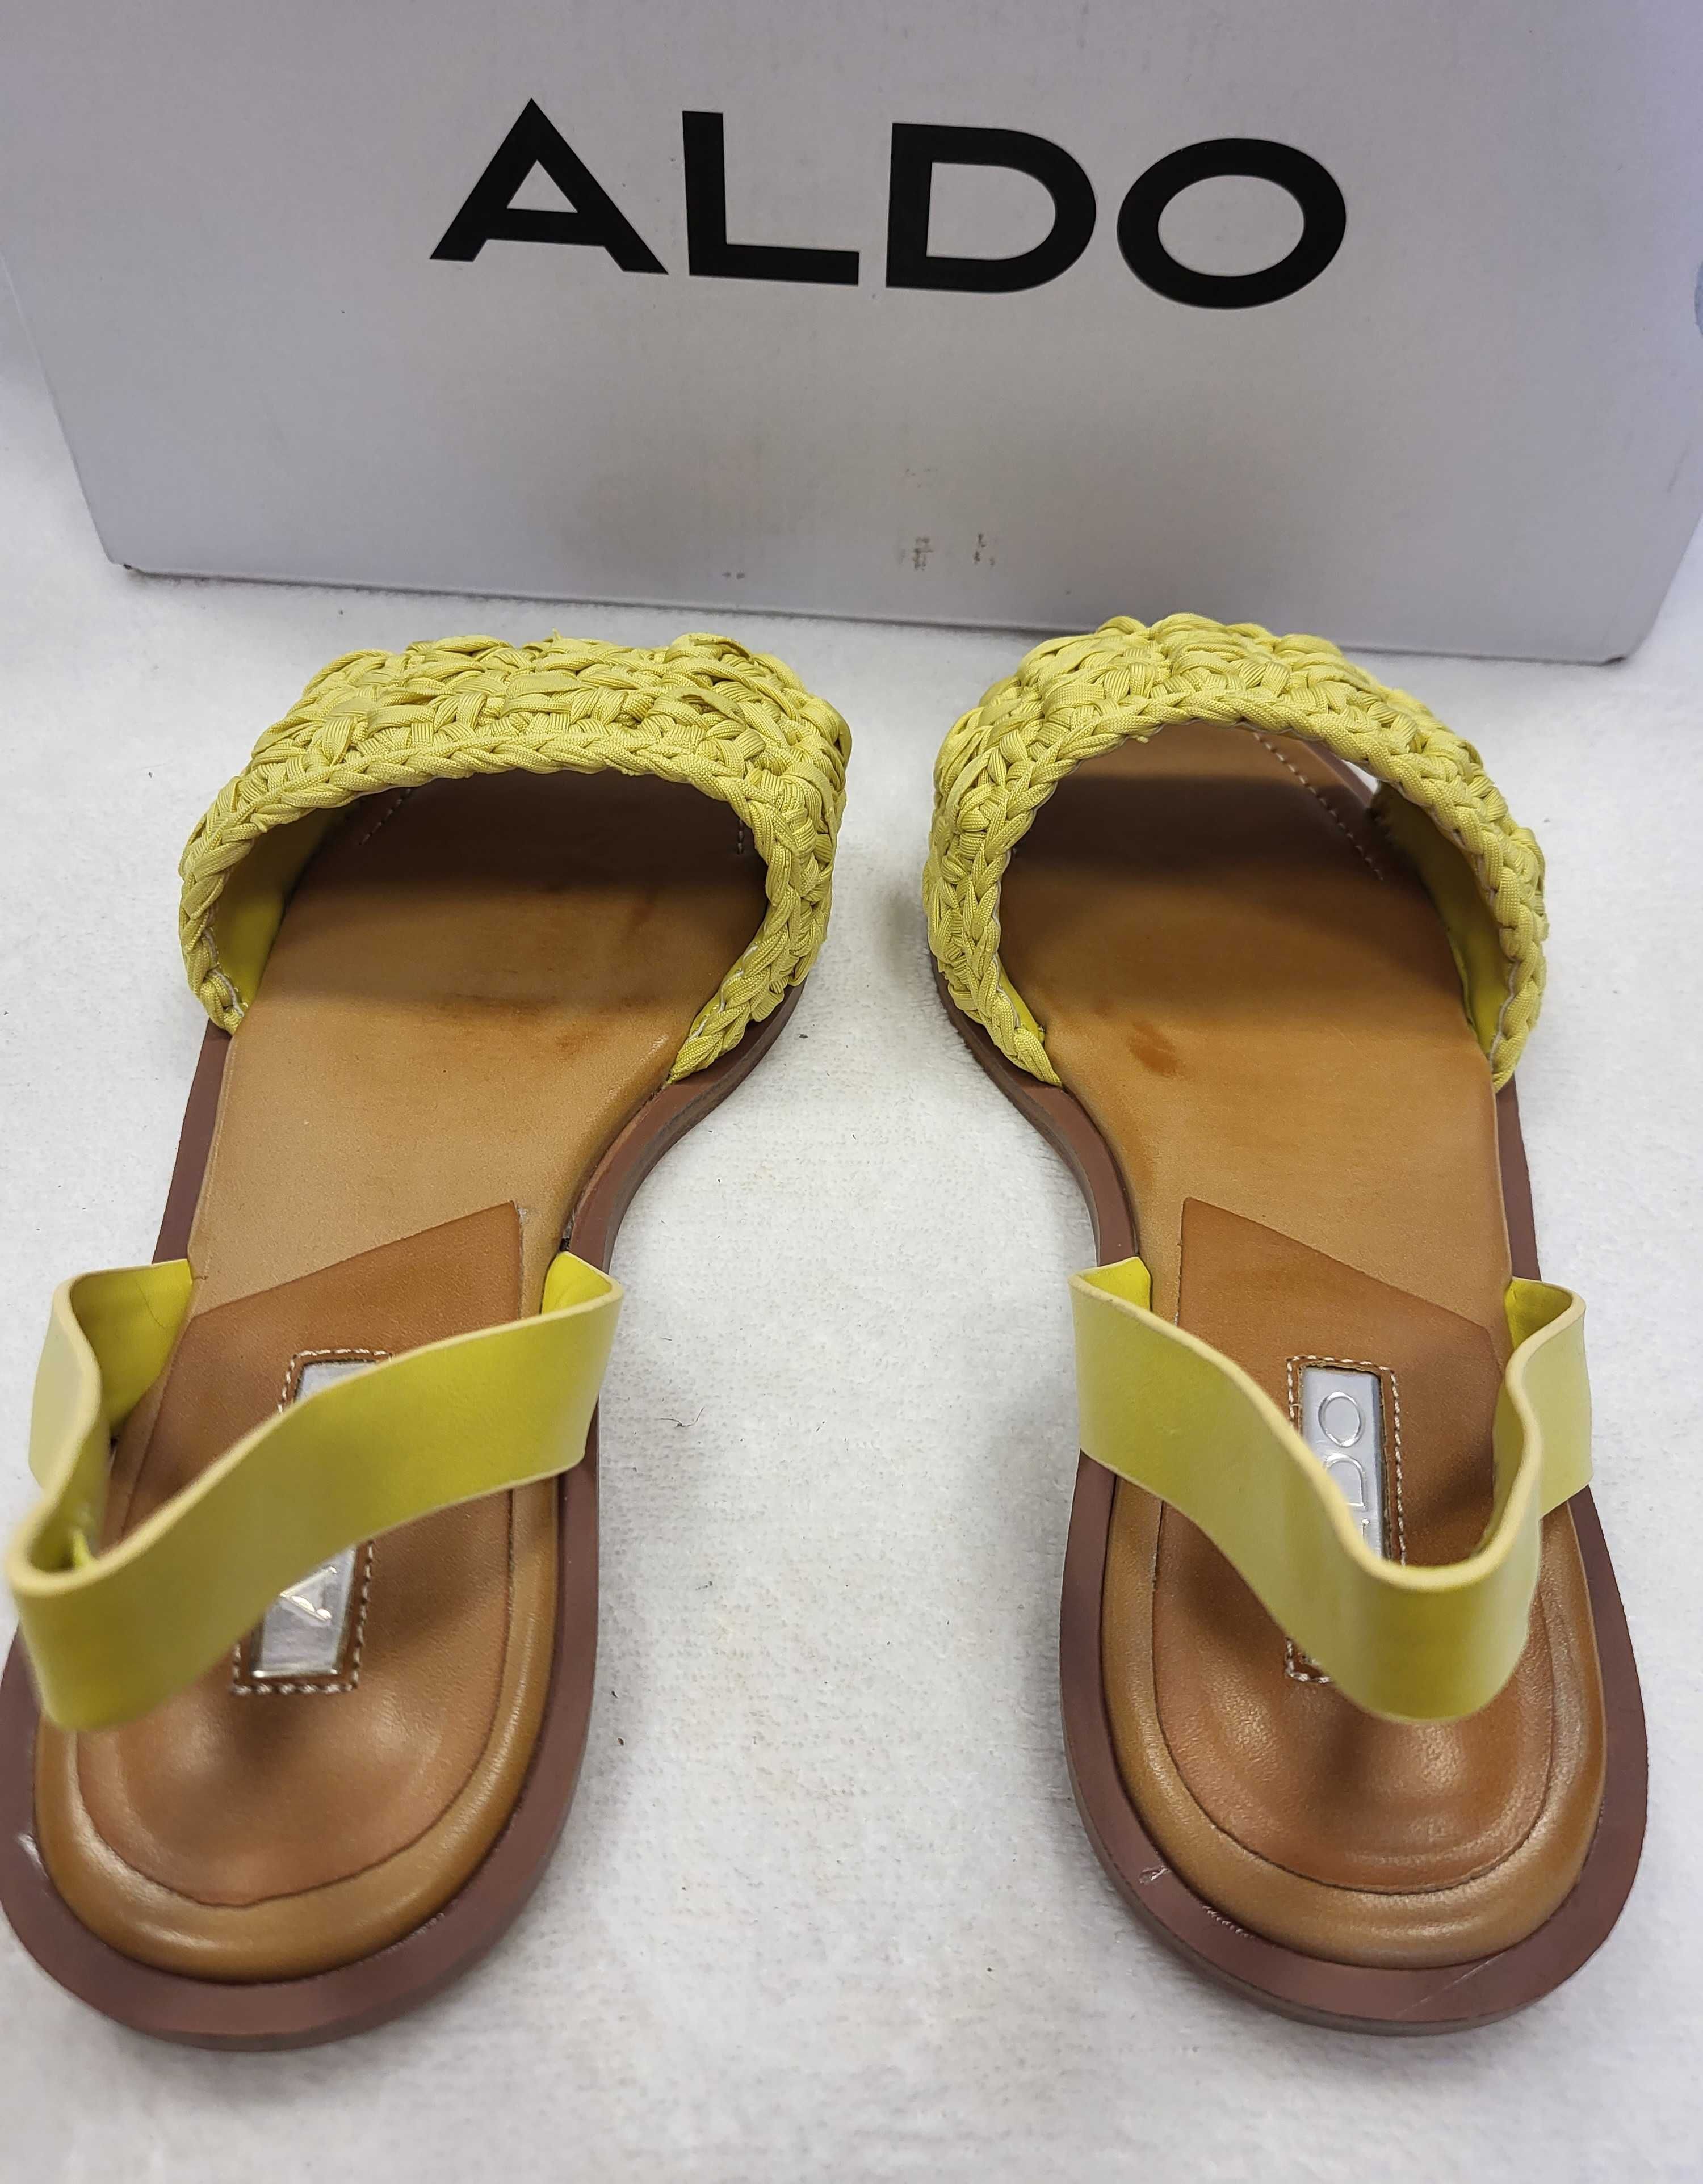 Sandały damskie płaskie ALDO żółte r. 36 - 23 cm